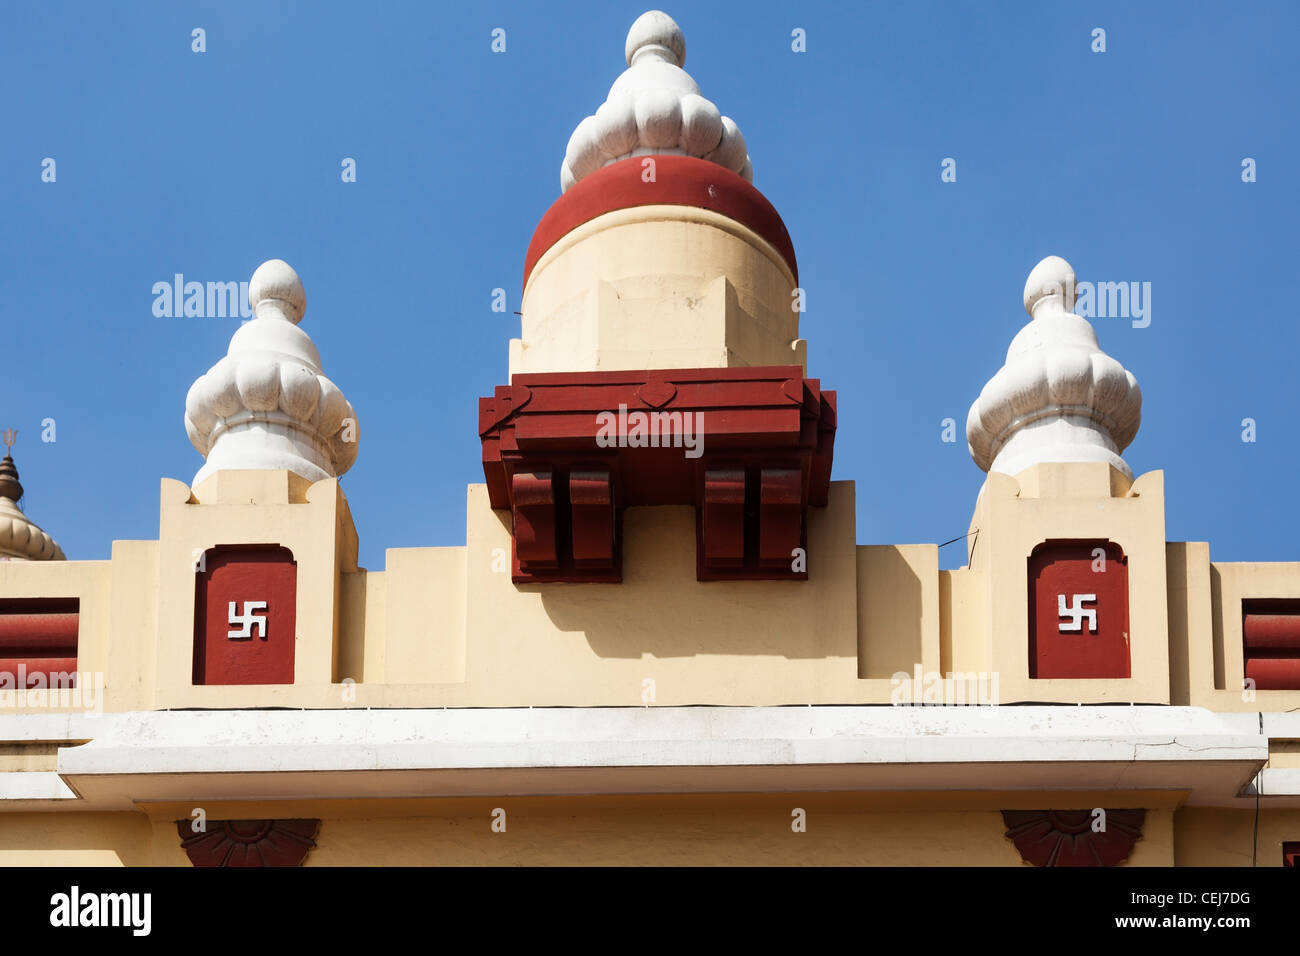 birla-mandir-templo-hindu-nueva-delhi-india-mostrando-esvasticas-como-adornos-religiosos-hindues-en-sol-bajo-un-cielo-azul-claro-cej7dg.jpg